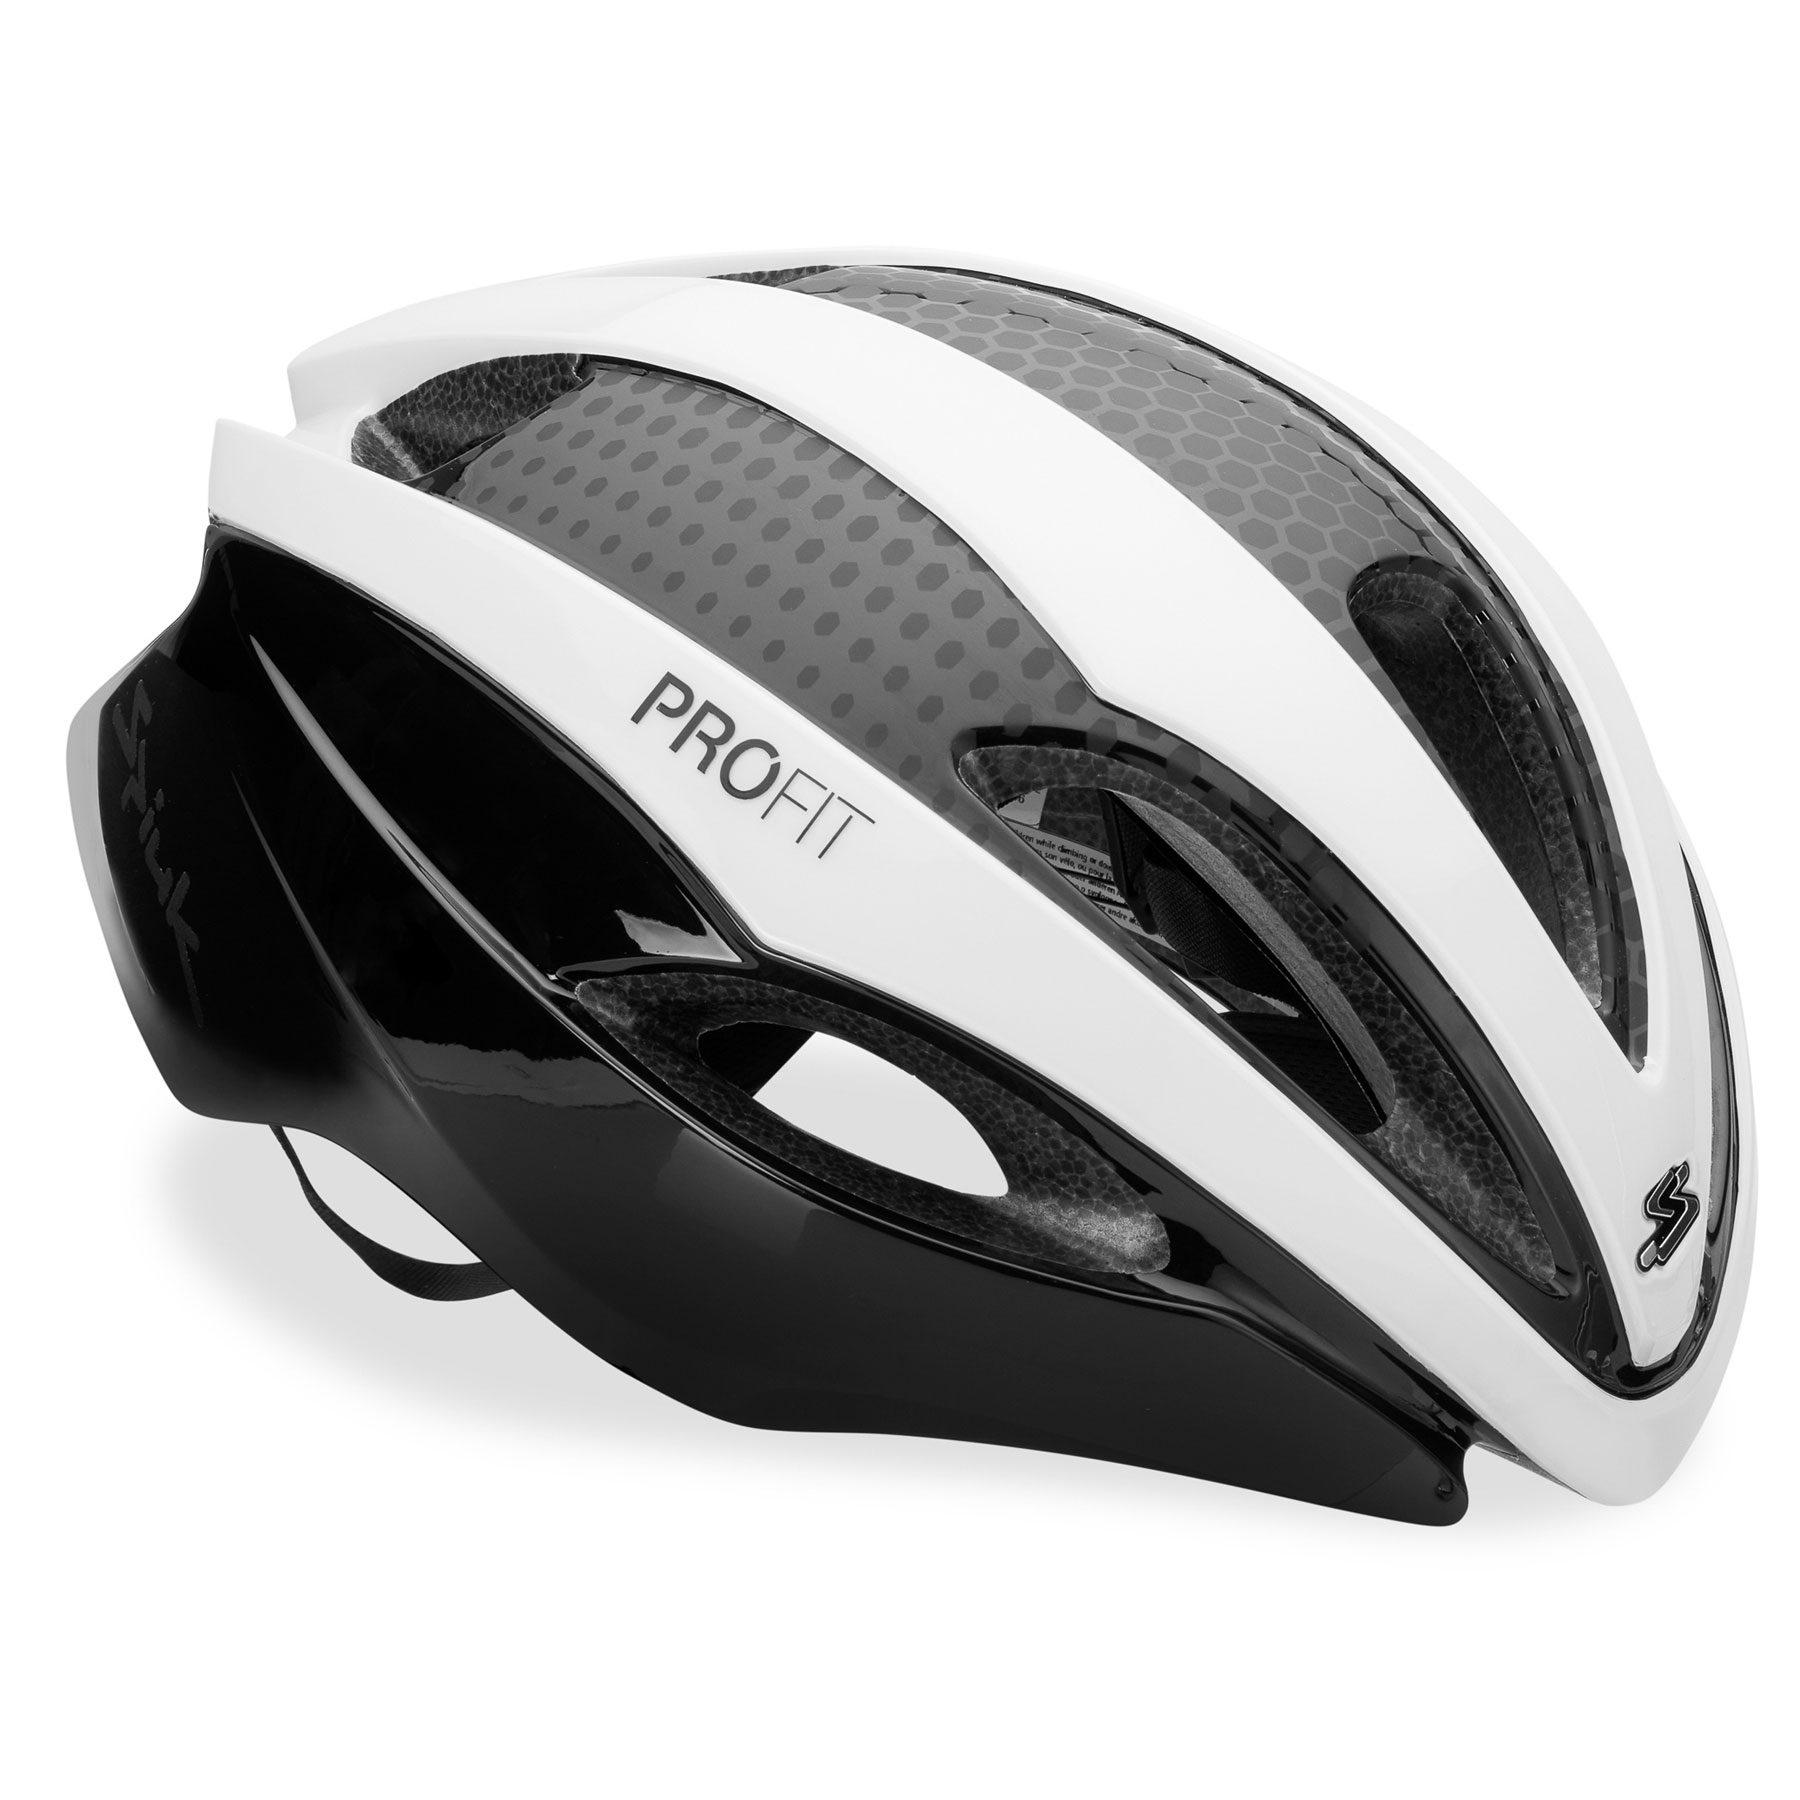 Produktbild von Spiuk PROFIT Aero Helmet - weiß/schwarz